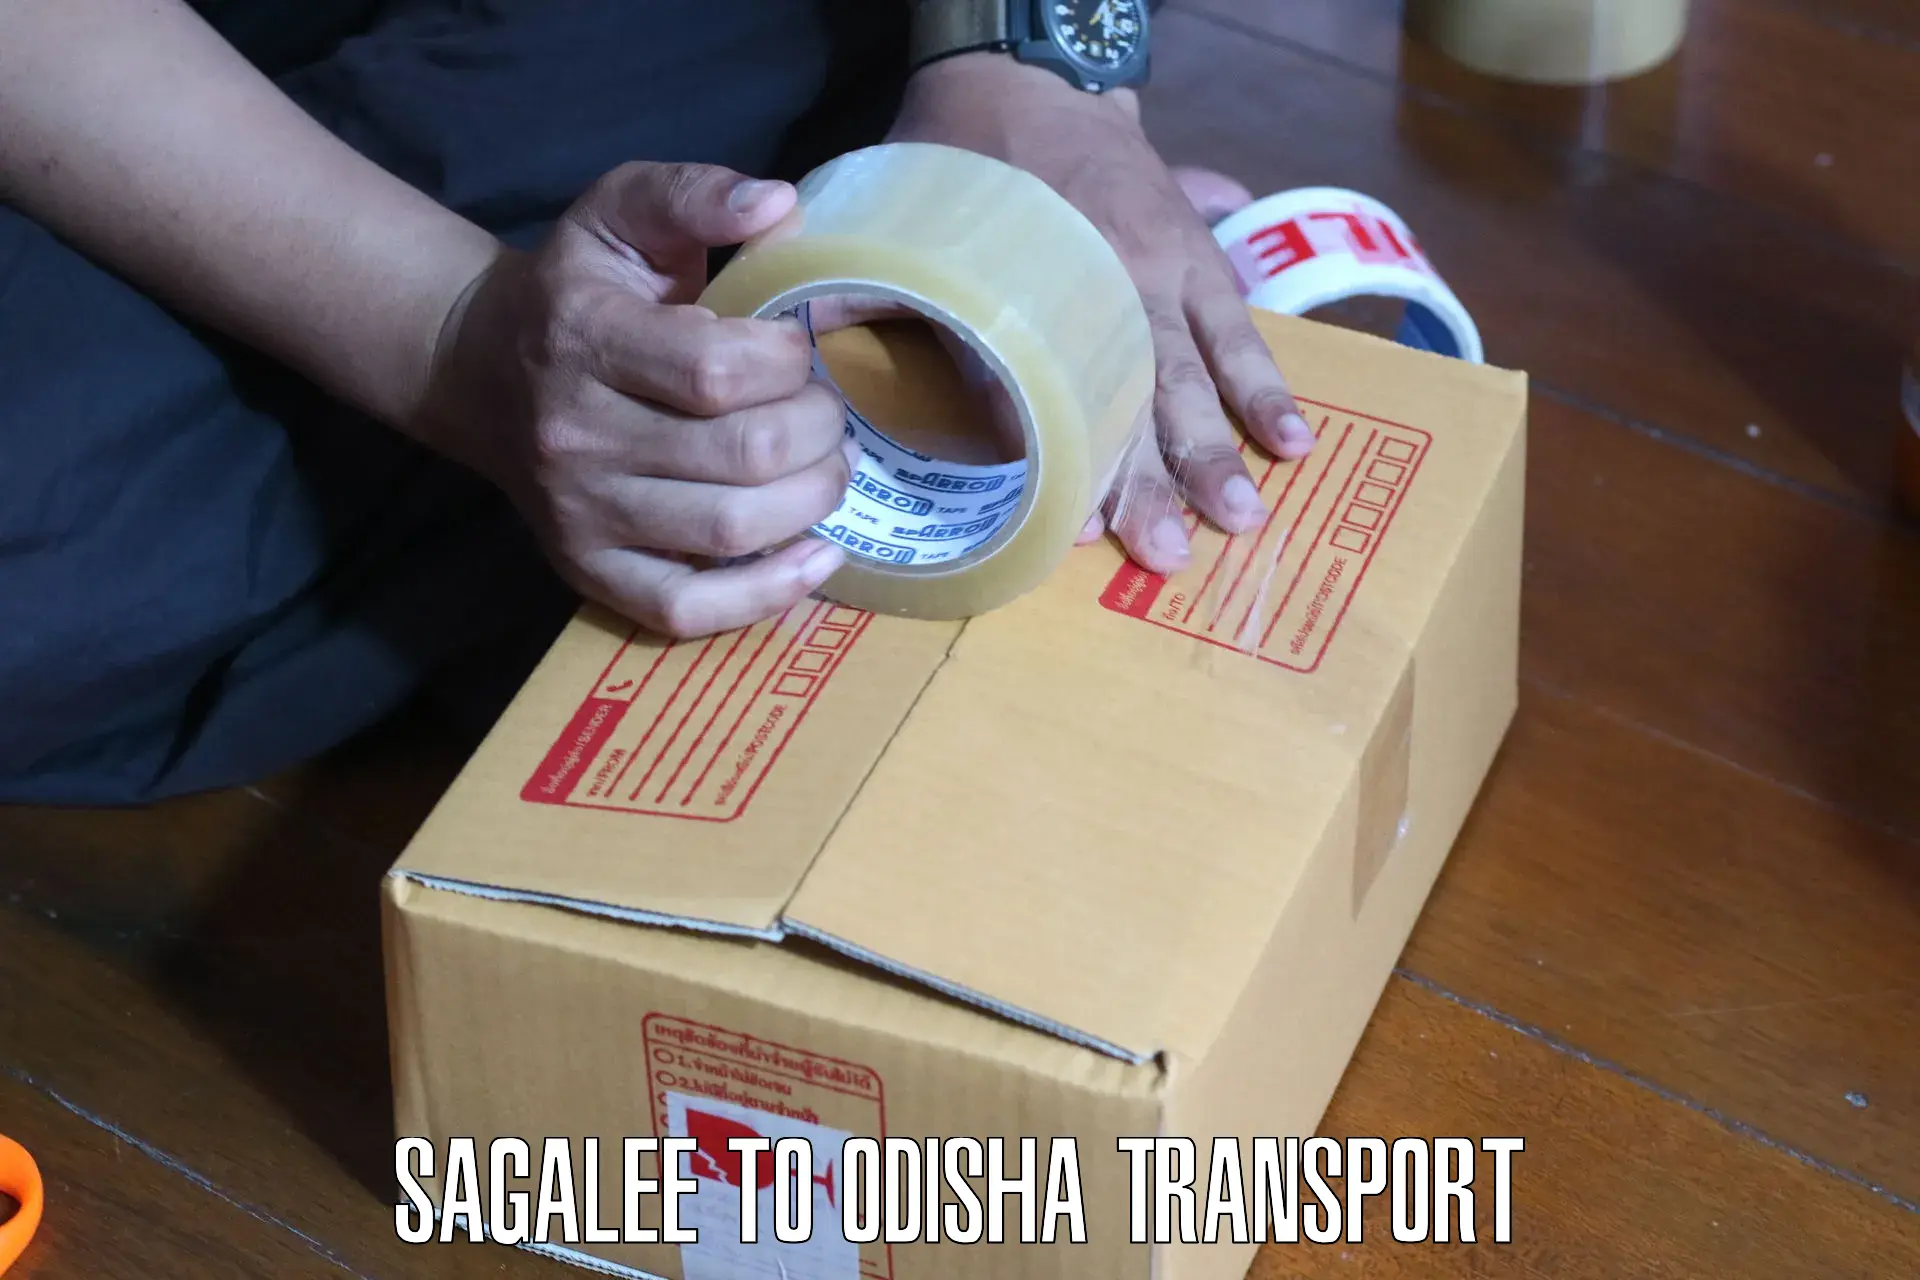 Shipping partner Sagalee to Polasara